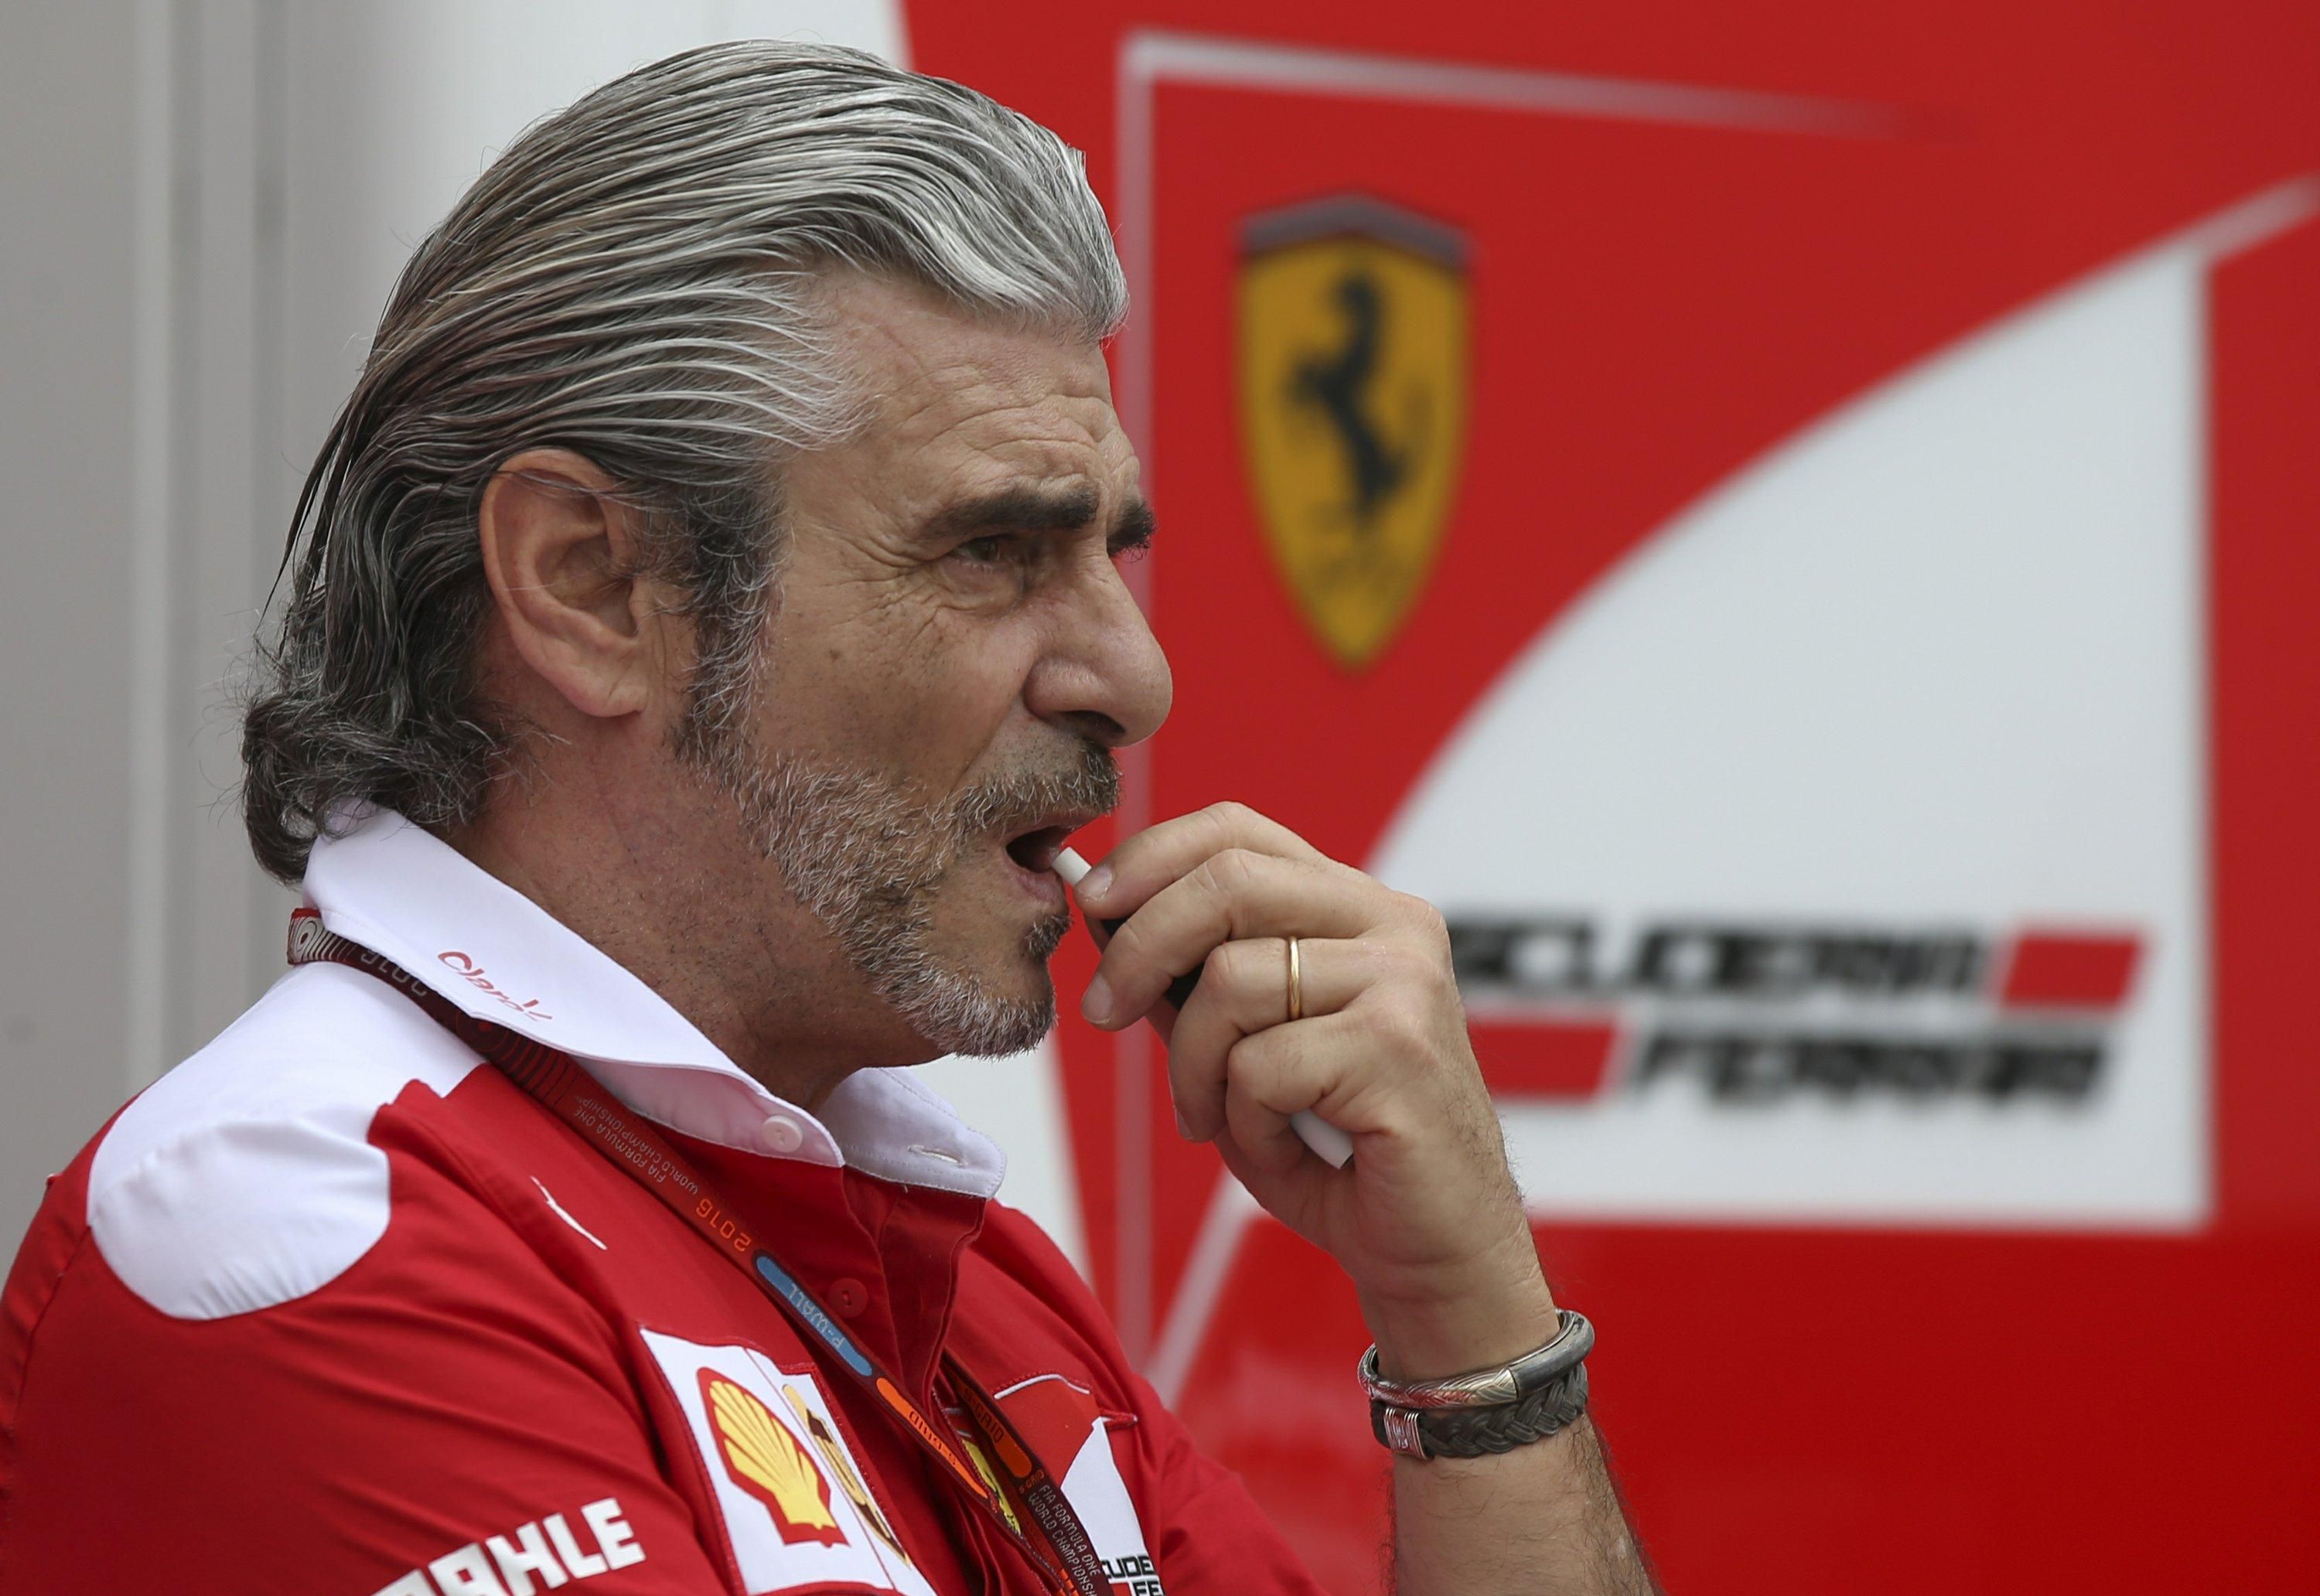 Колишній керівник Ferrari став водієм швидкої, щоб боротися з коронавірусом